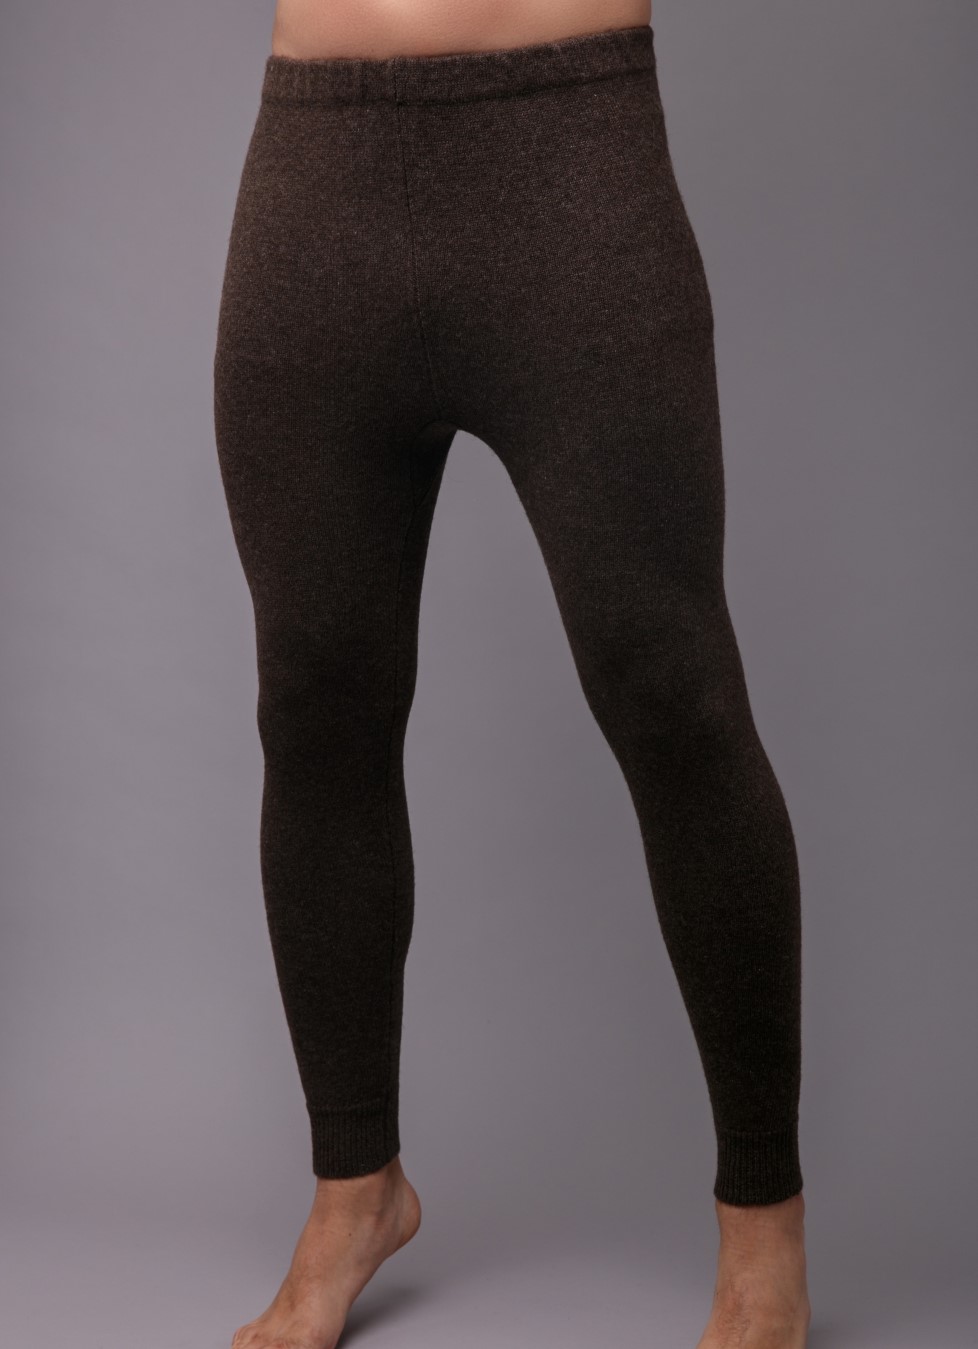 Brown thermal leggings